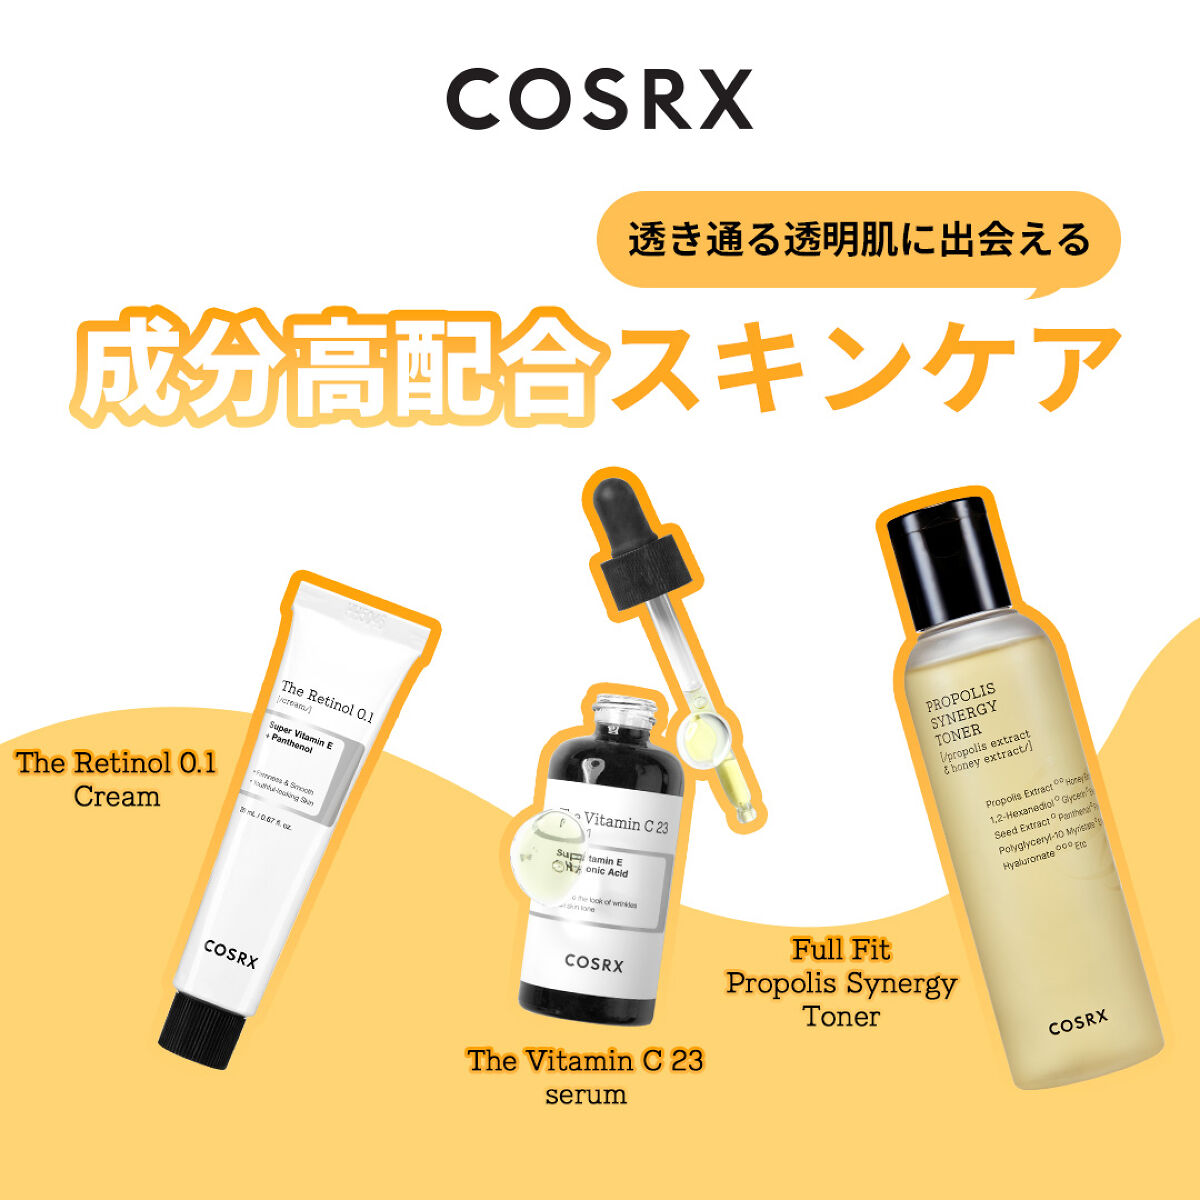 COSRX 公式 アカウント on LIPS 「『COSRX (コスアールエックス)』 ..」 LIPS